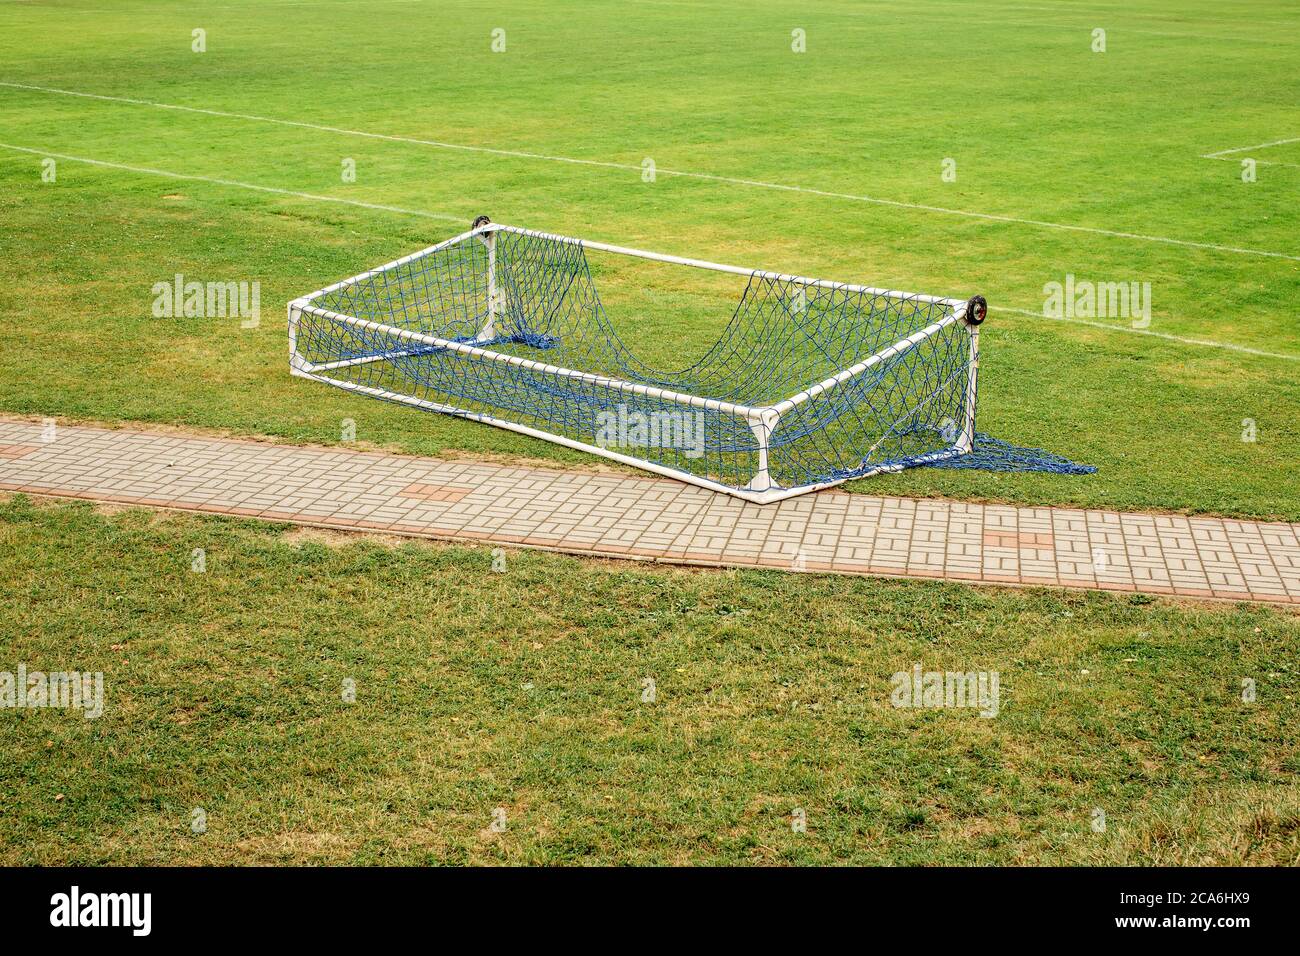 Abandoned fallen soccer football gate lying on empty green field Stock Photo